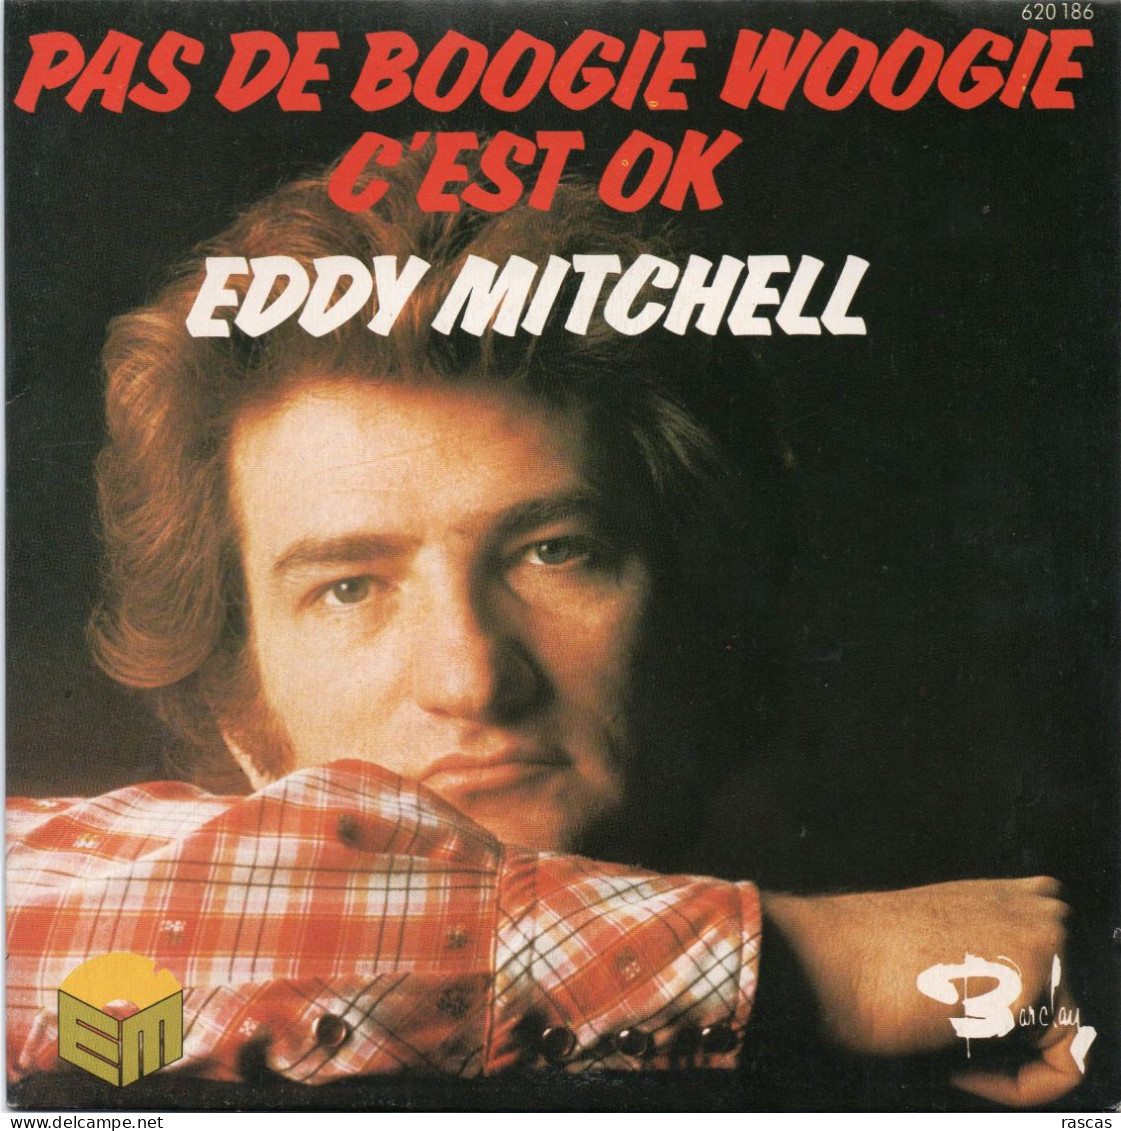 DISQUE VINYL 45 T DU CHANTEUR FRANCAIS EDDY MITCHELL - PAS DE BOOGIE WOOGIE - C'EST OK - Other - French Music